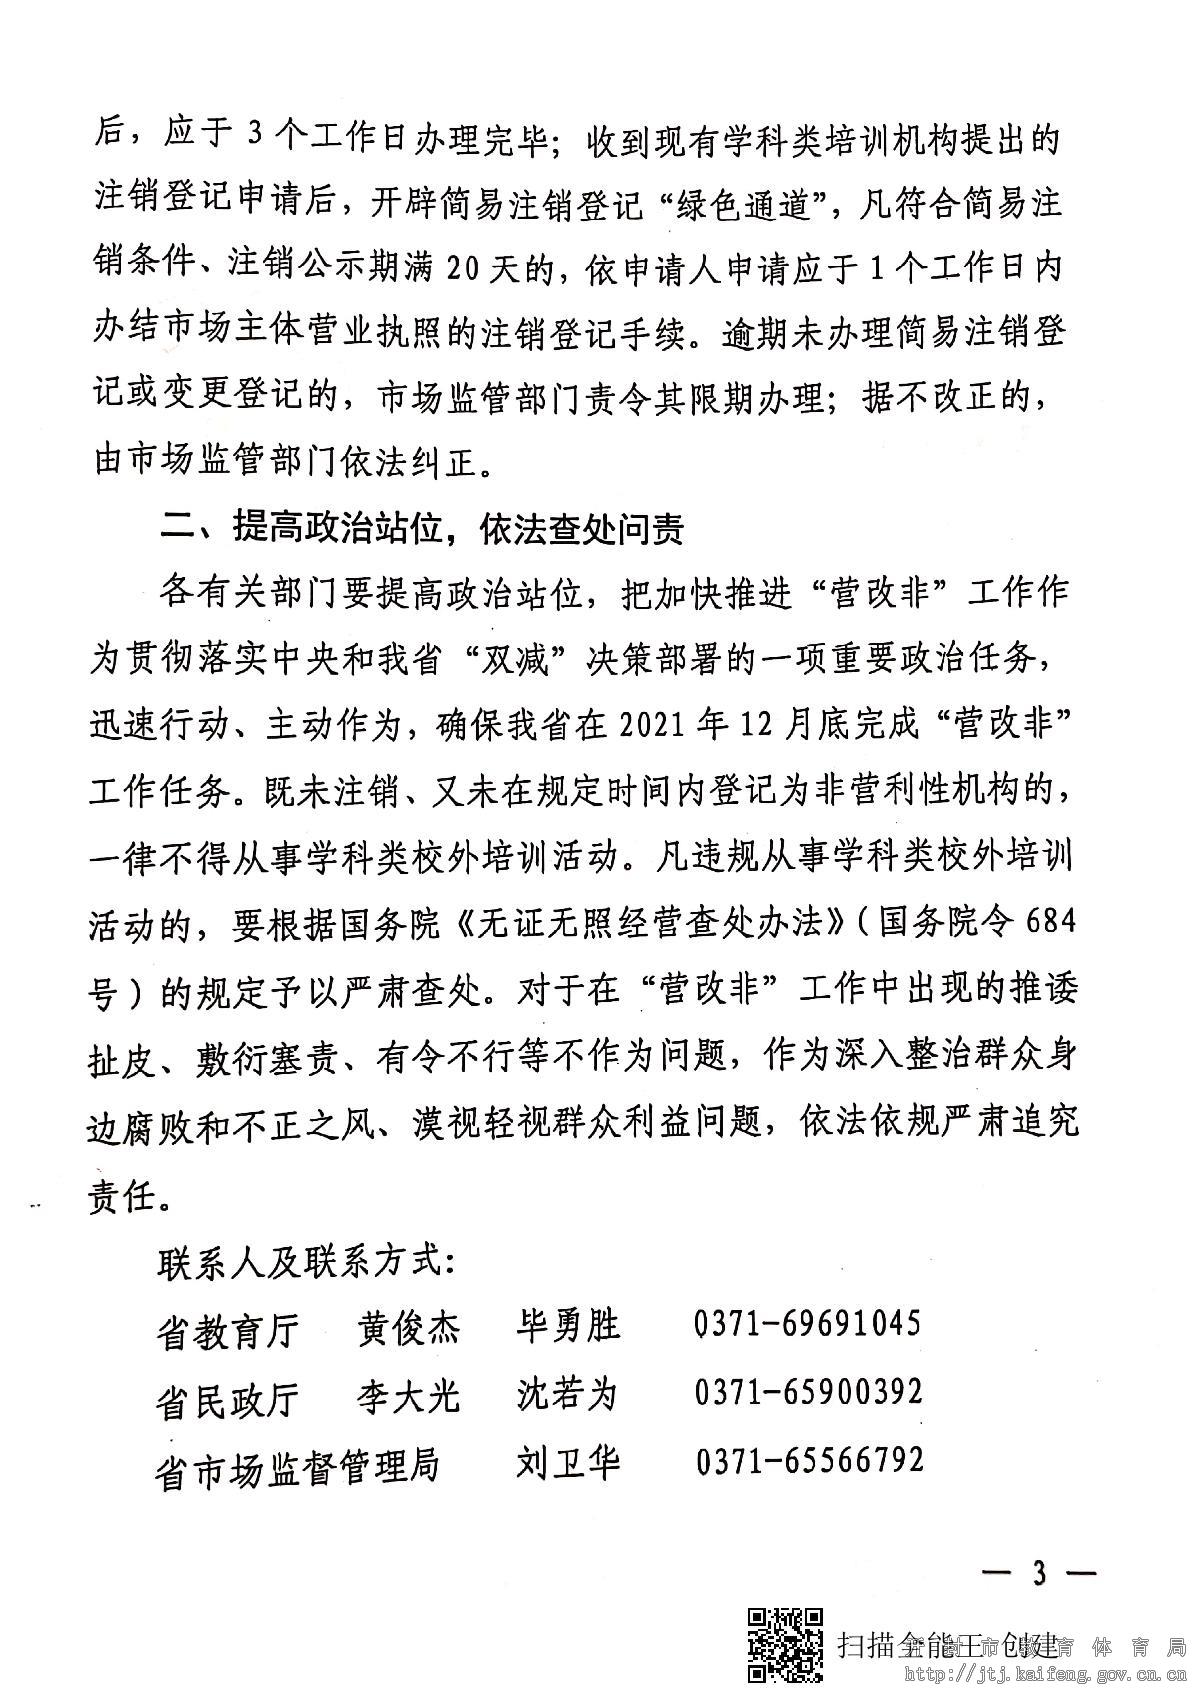 河南省教育厅等三部门关于开辟“绿色通道” 加快推进“营改非”工作的通知_3.JPG